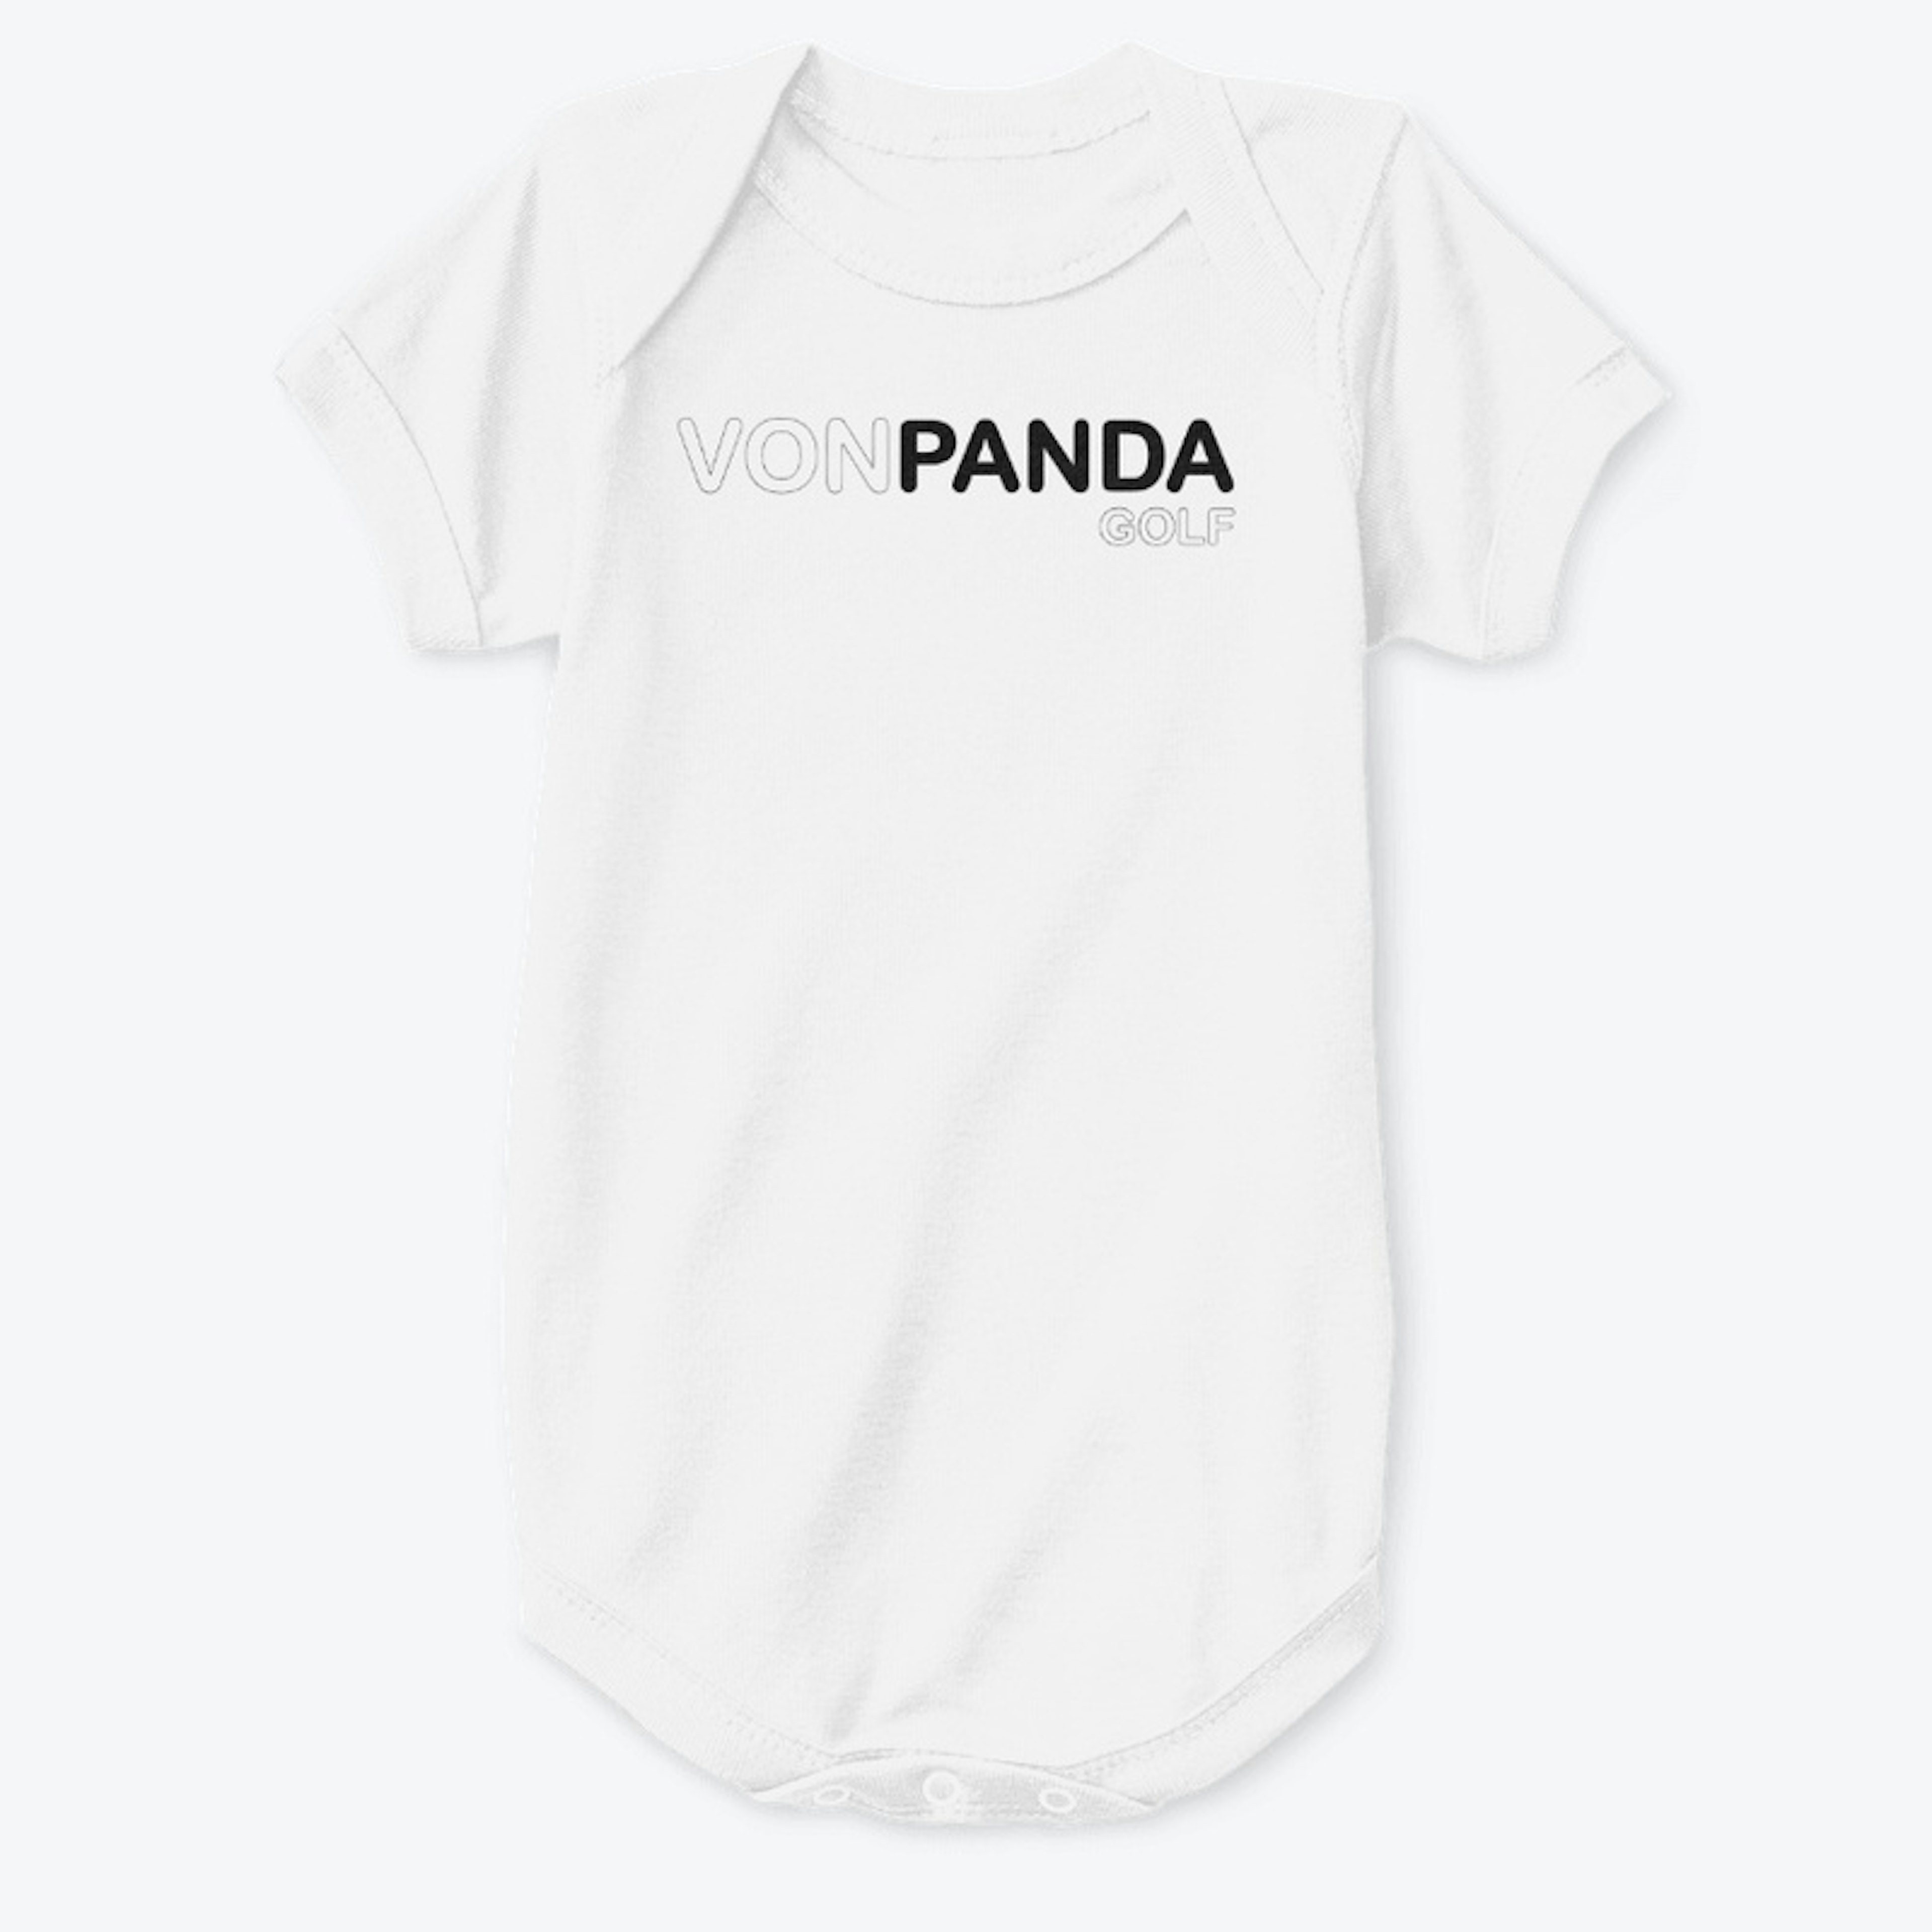 von Panda Golf Shirt